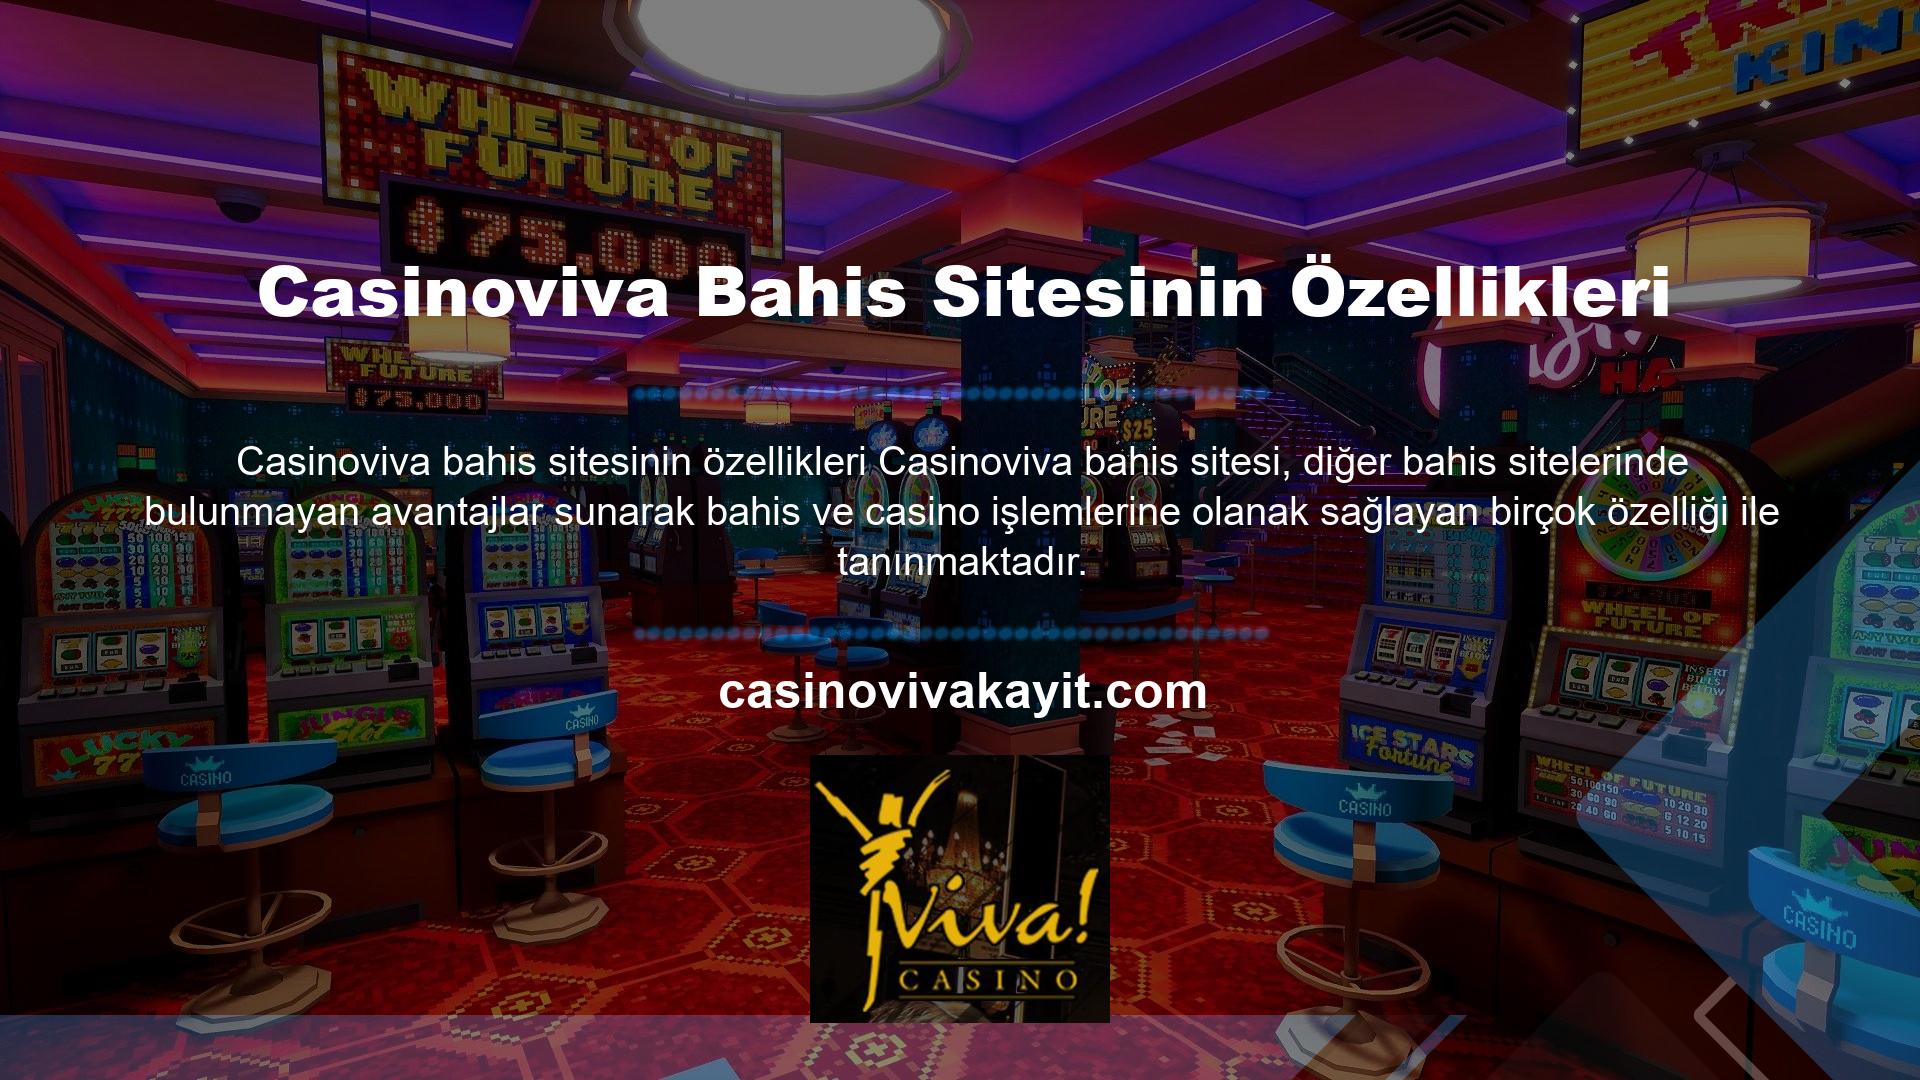 Casinoviva bahis sitesinin özellikleri